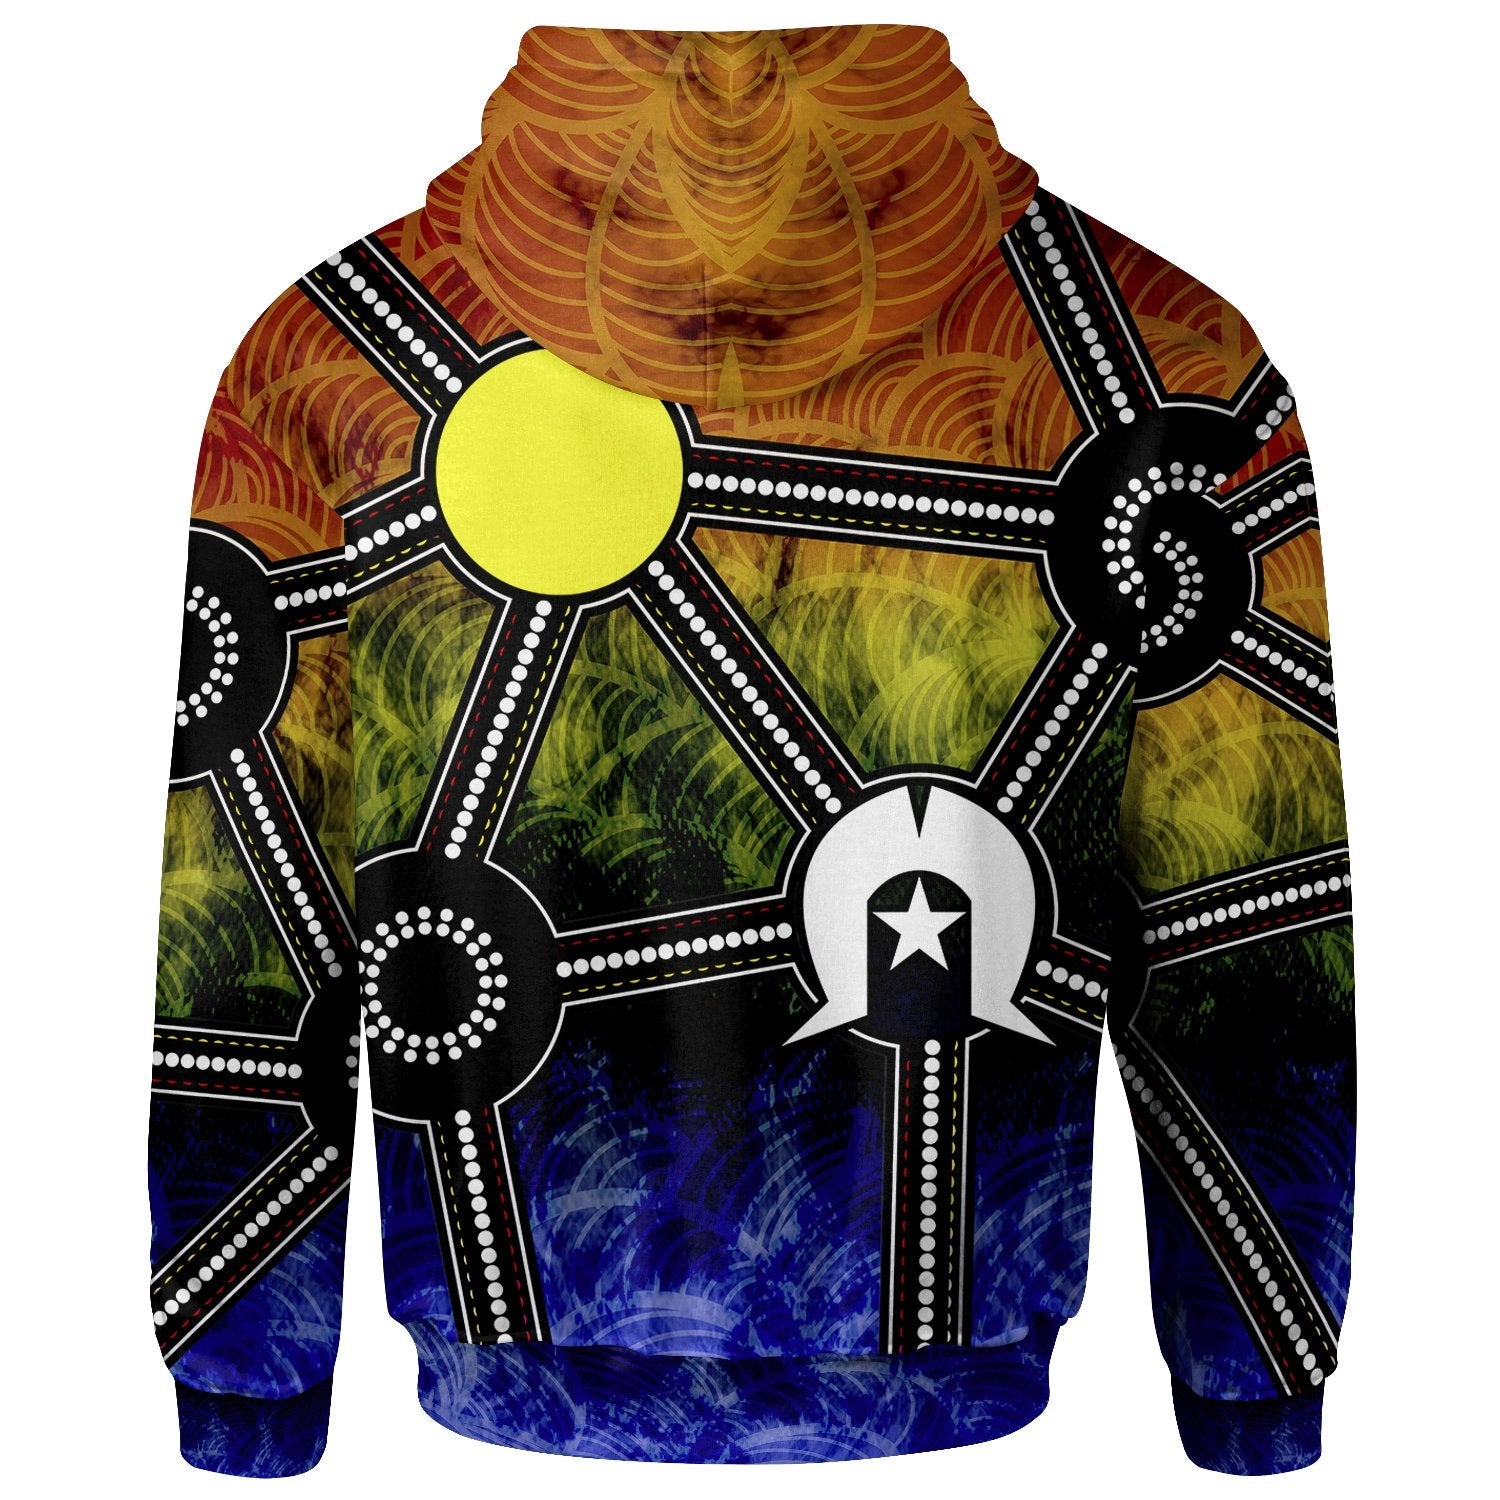 naidoc-week-2021-zip-up-hoodie-aboriginal-geometric-style